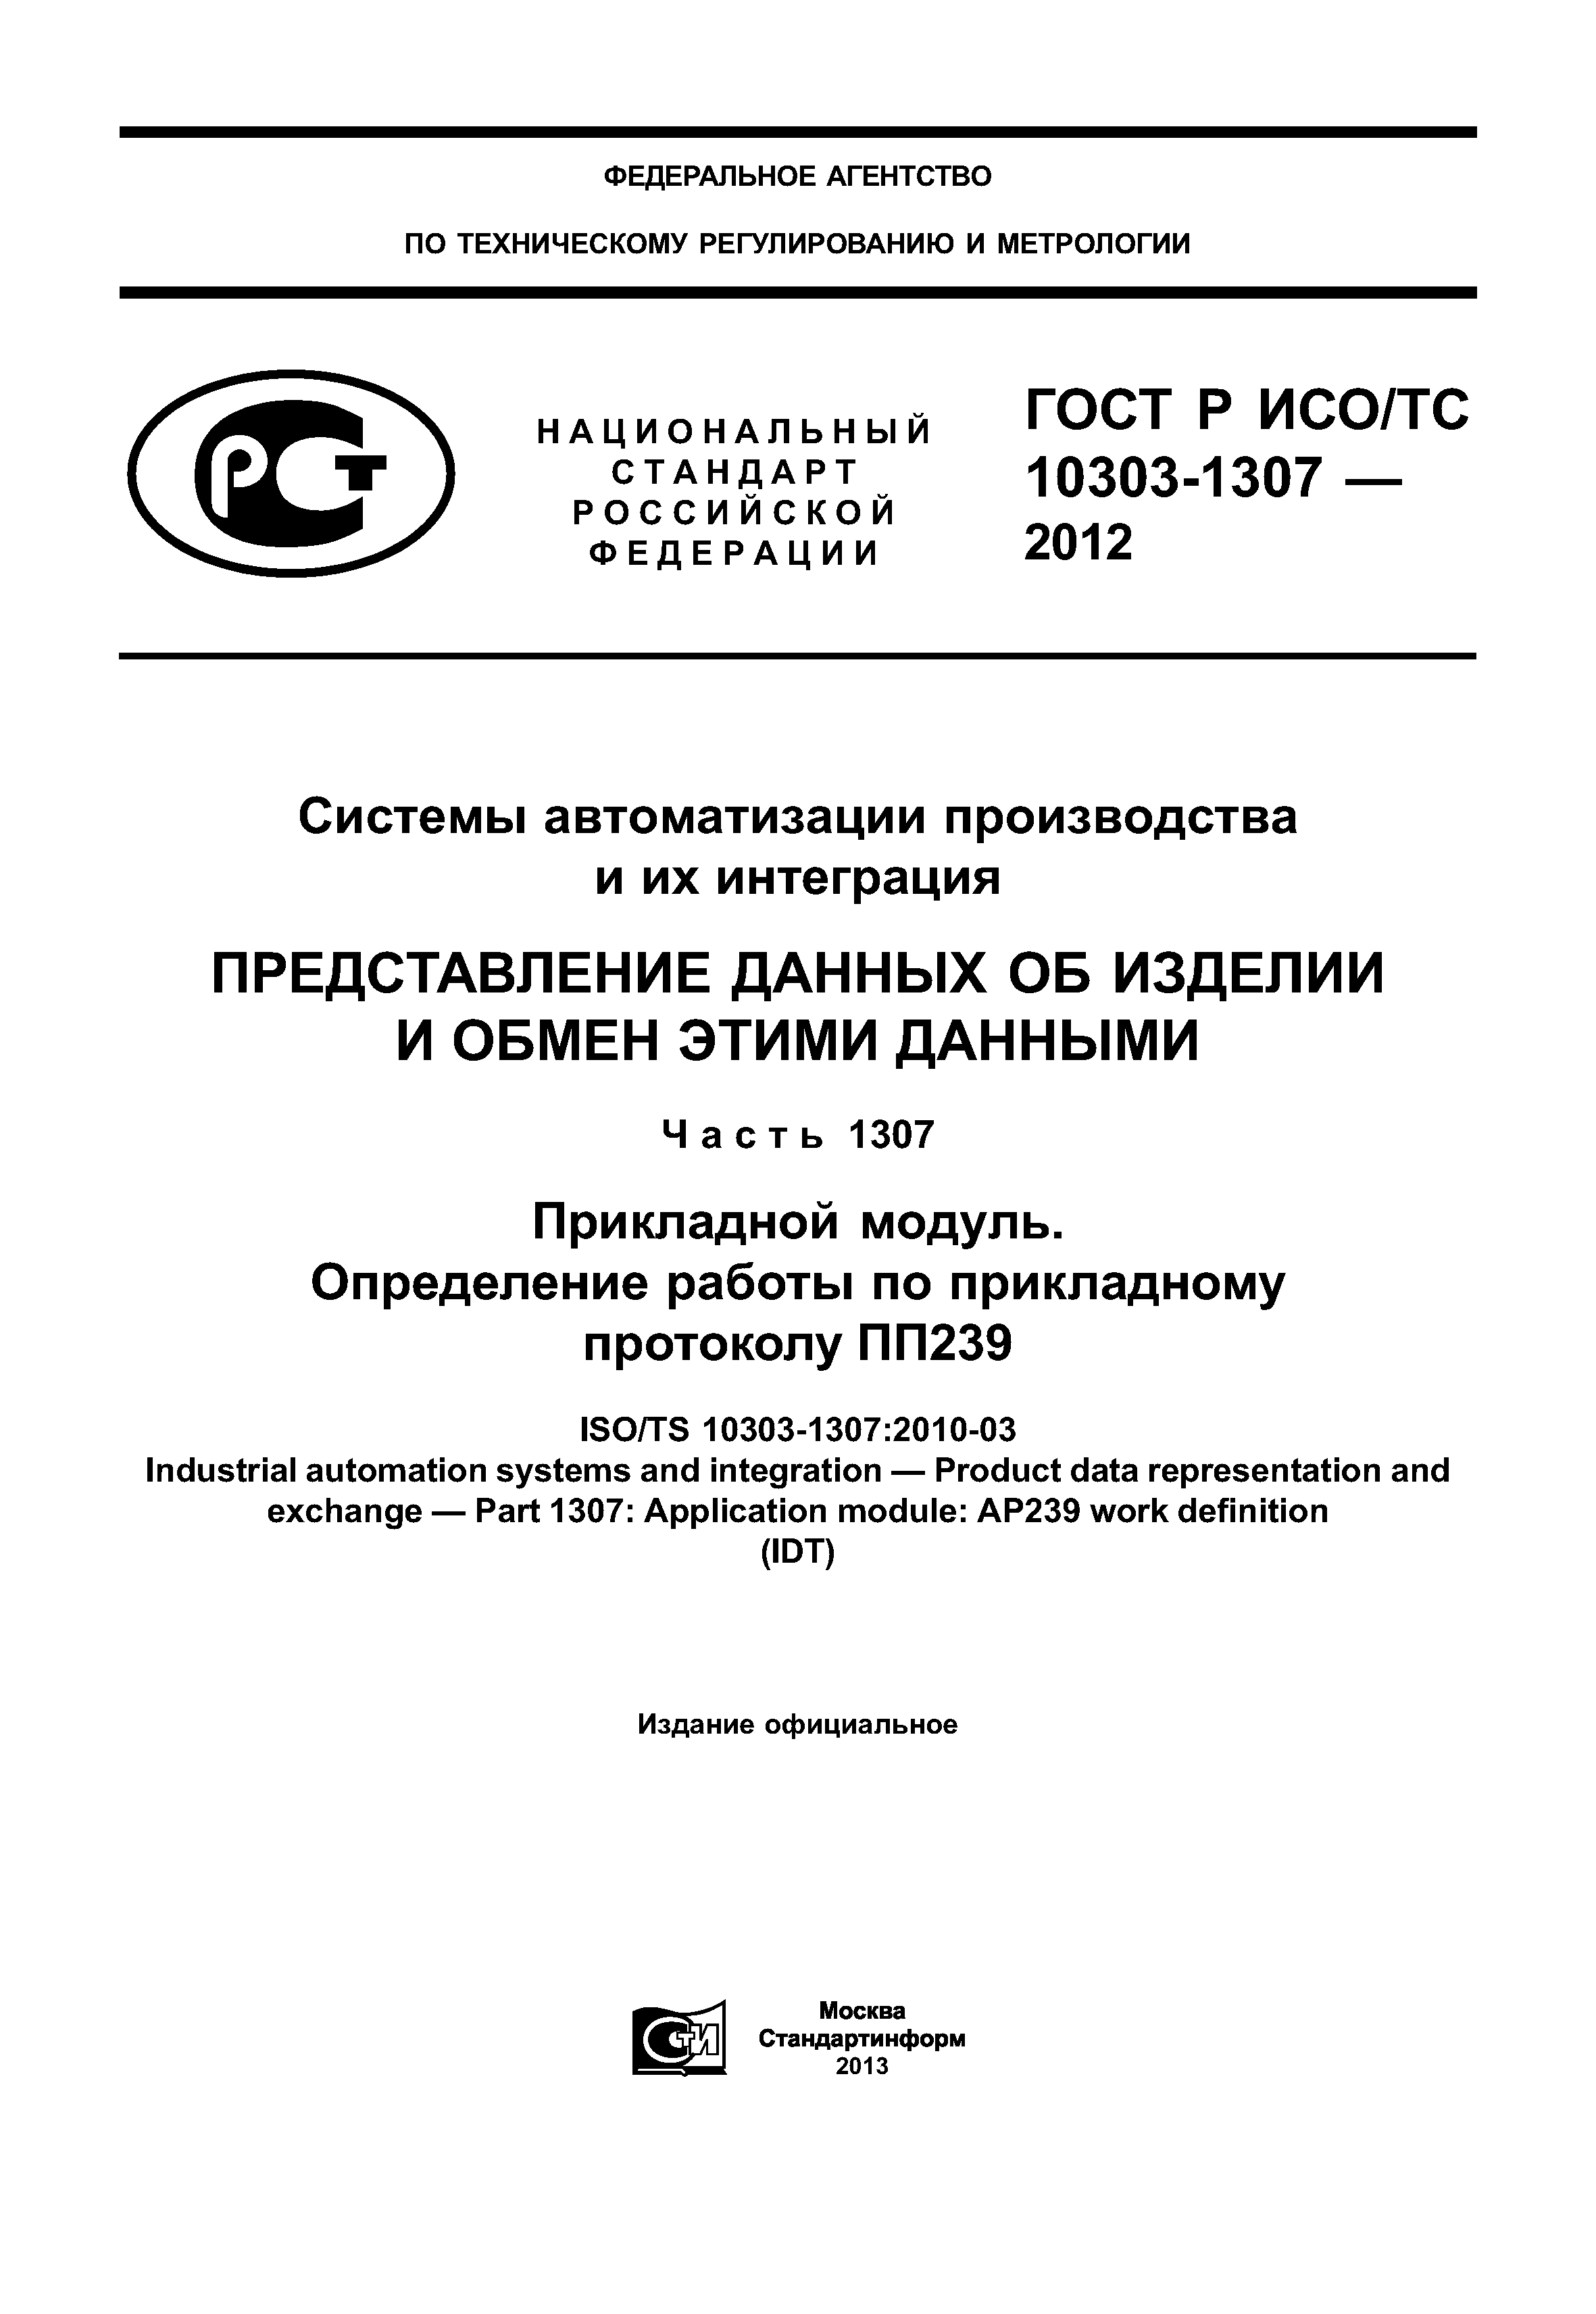 ГОСТ Р ИСО/ТС 10303-1307-2012